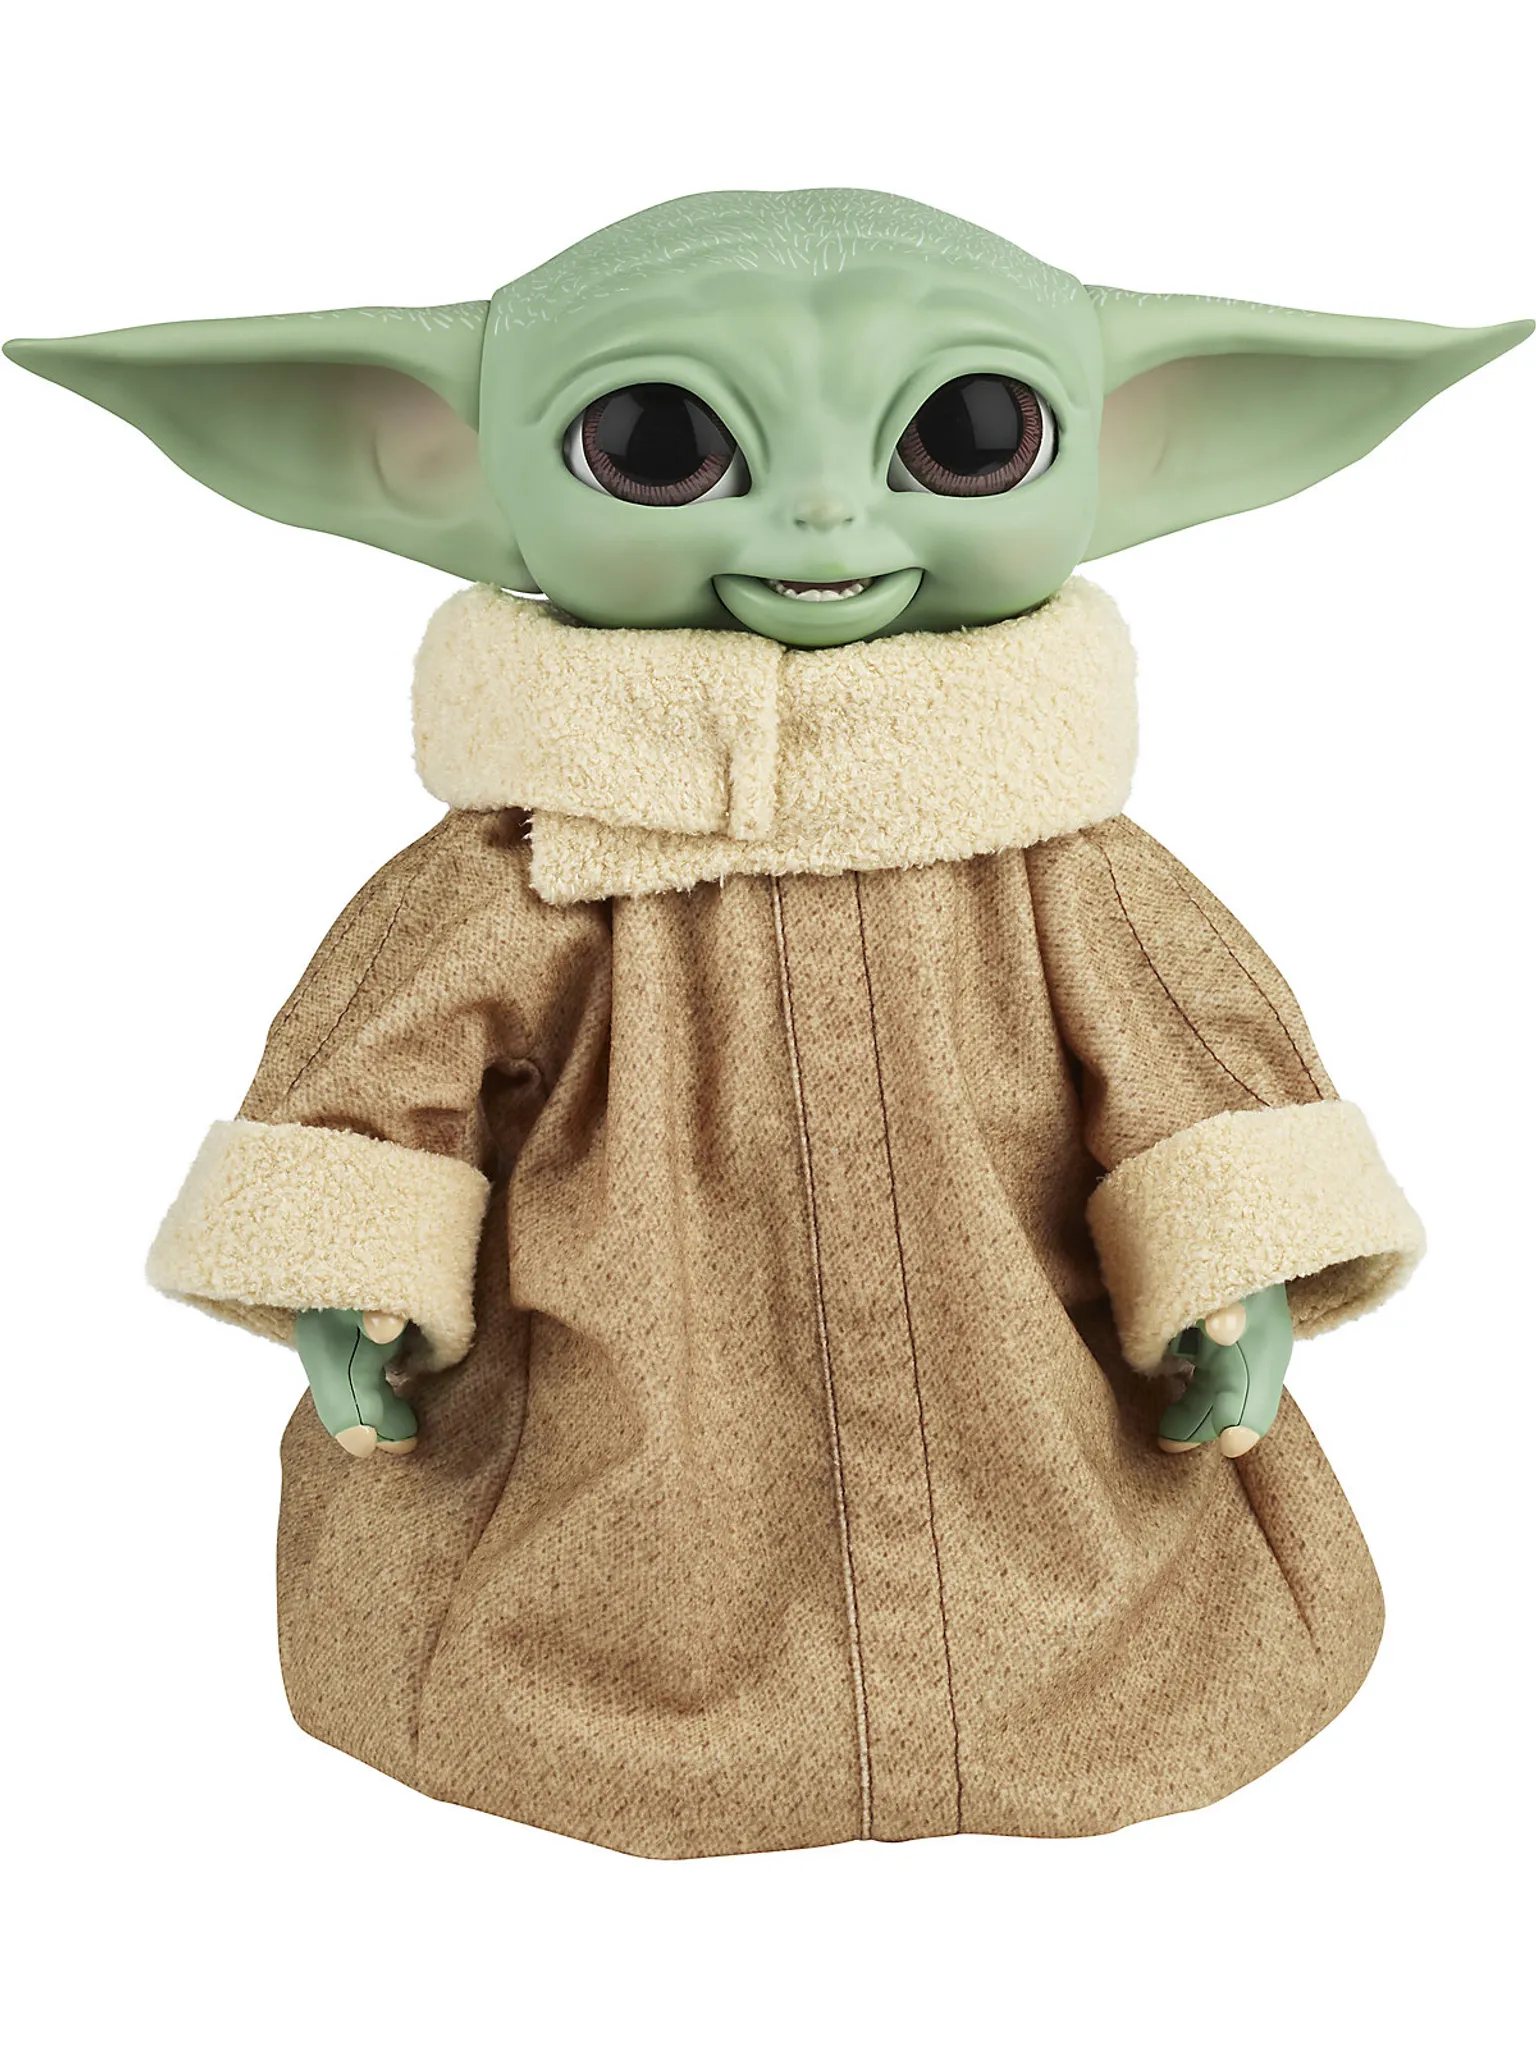 Weiches Baby Yoda Kuscheltier 25cm - Niedlicher Grogu von Mandalorian